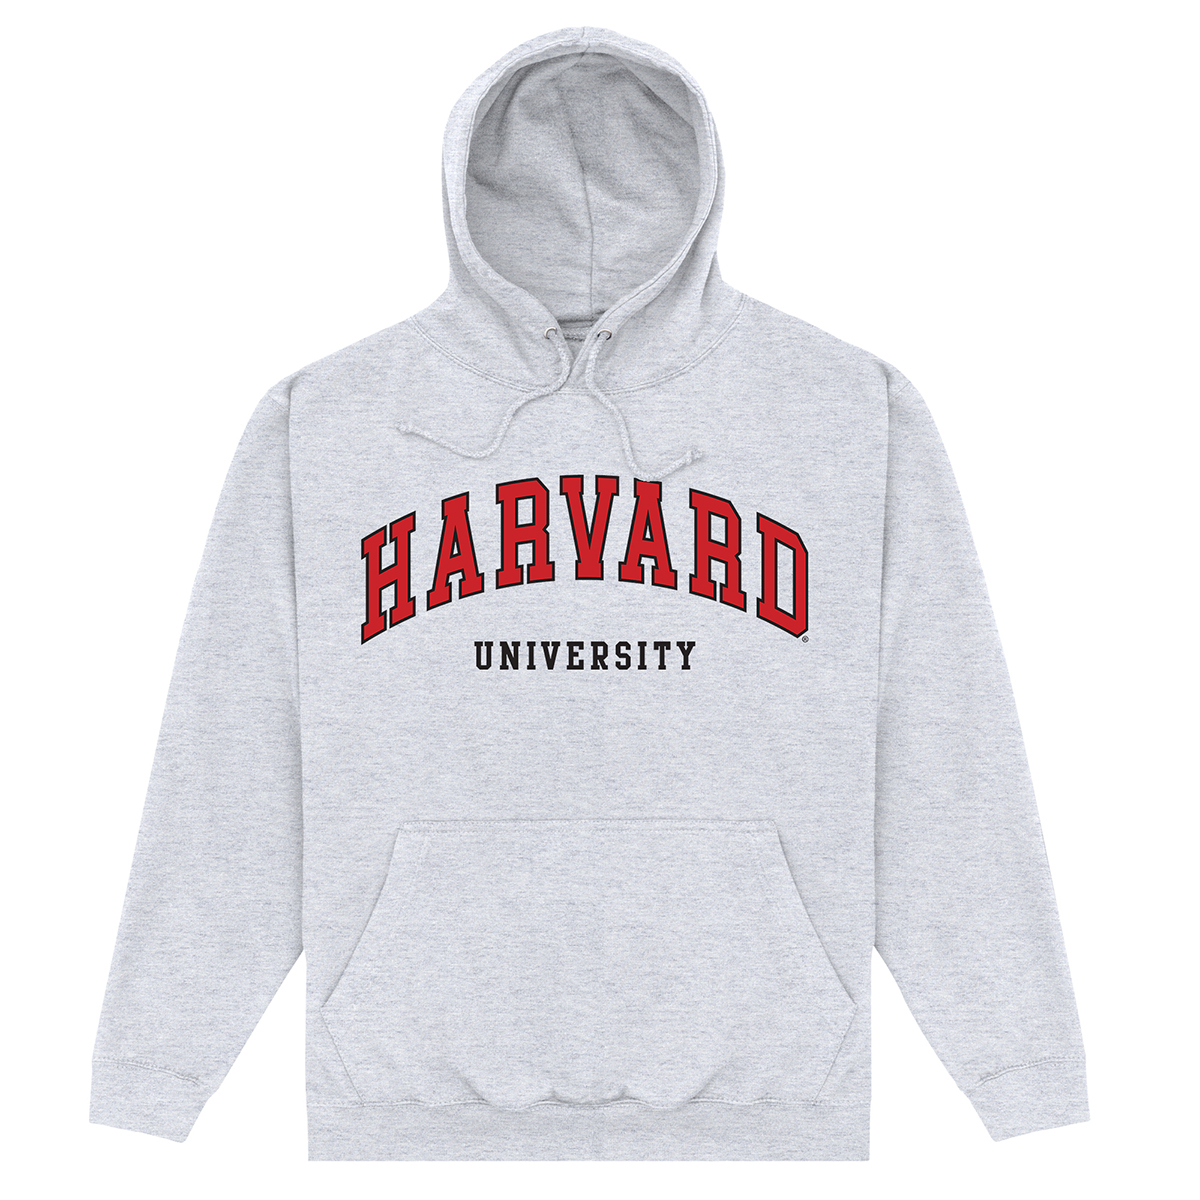 Official Harvard University Script Hoodie Marl Long Sleeve Print OTH Hoody Top